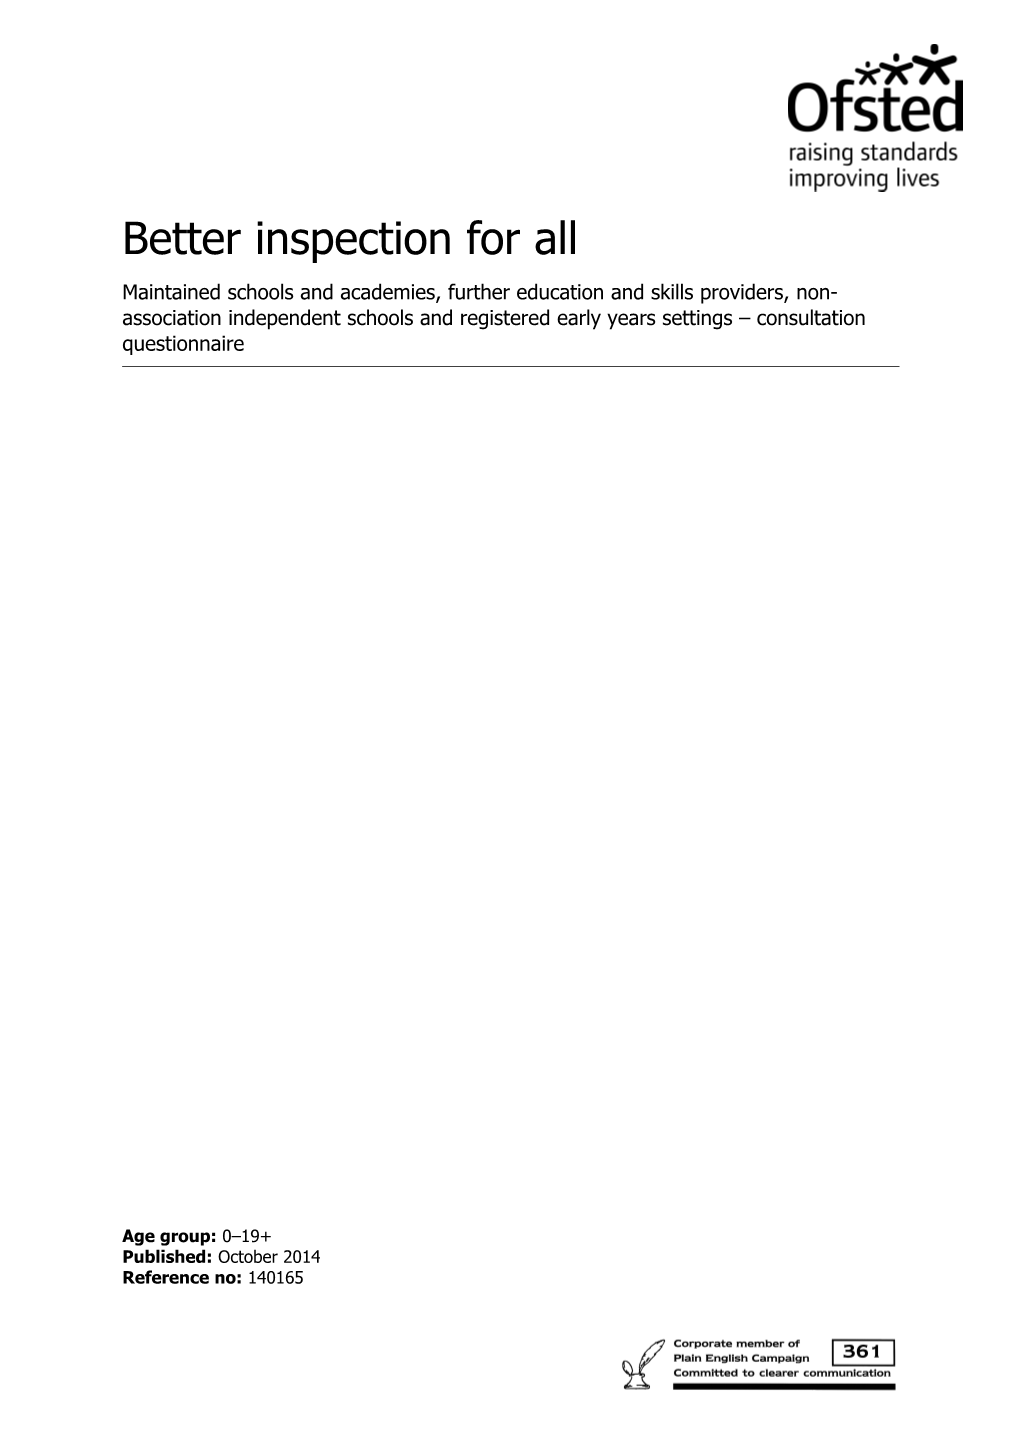 Better Inspection for All